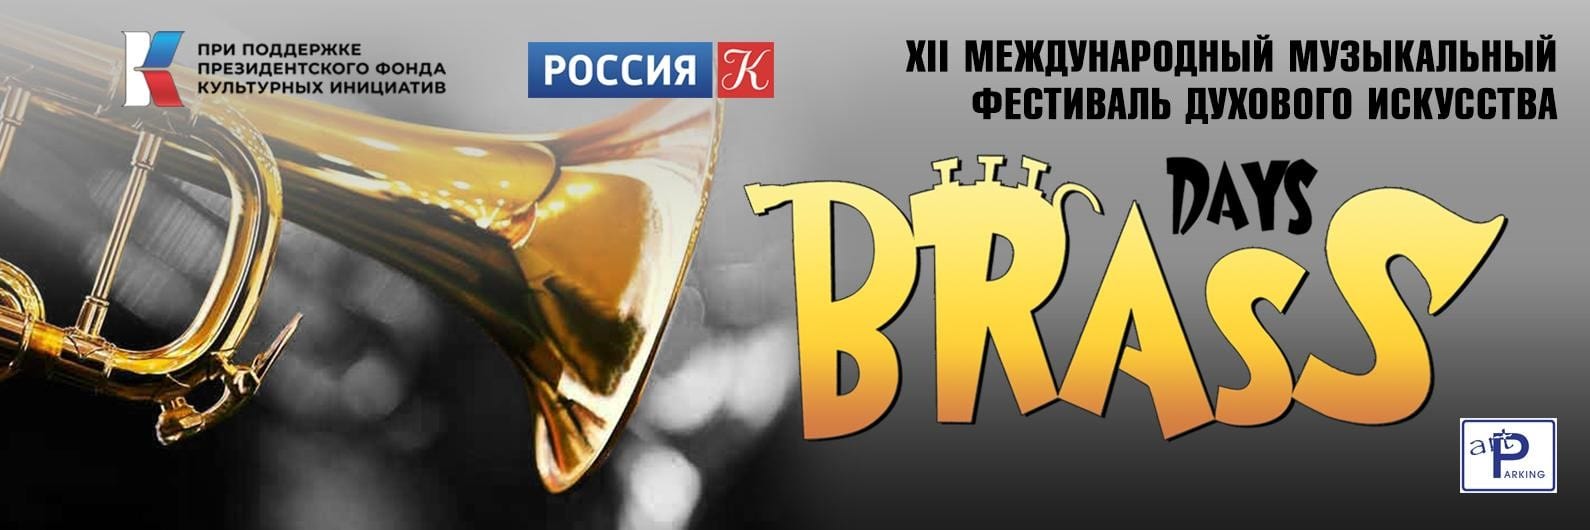 XII Международный фестиваль духового искусства Brass Days продолжится концертами в Санкт-Петербурге и Ефремове